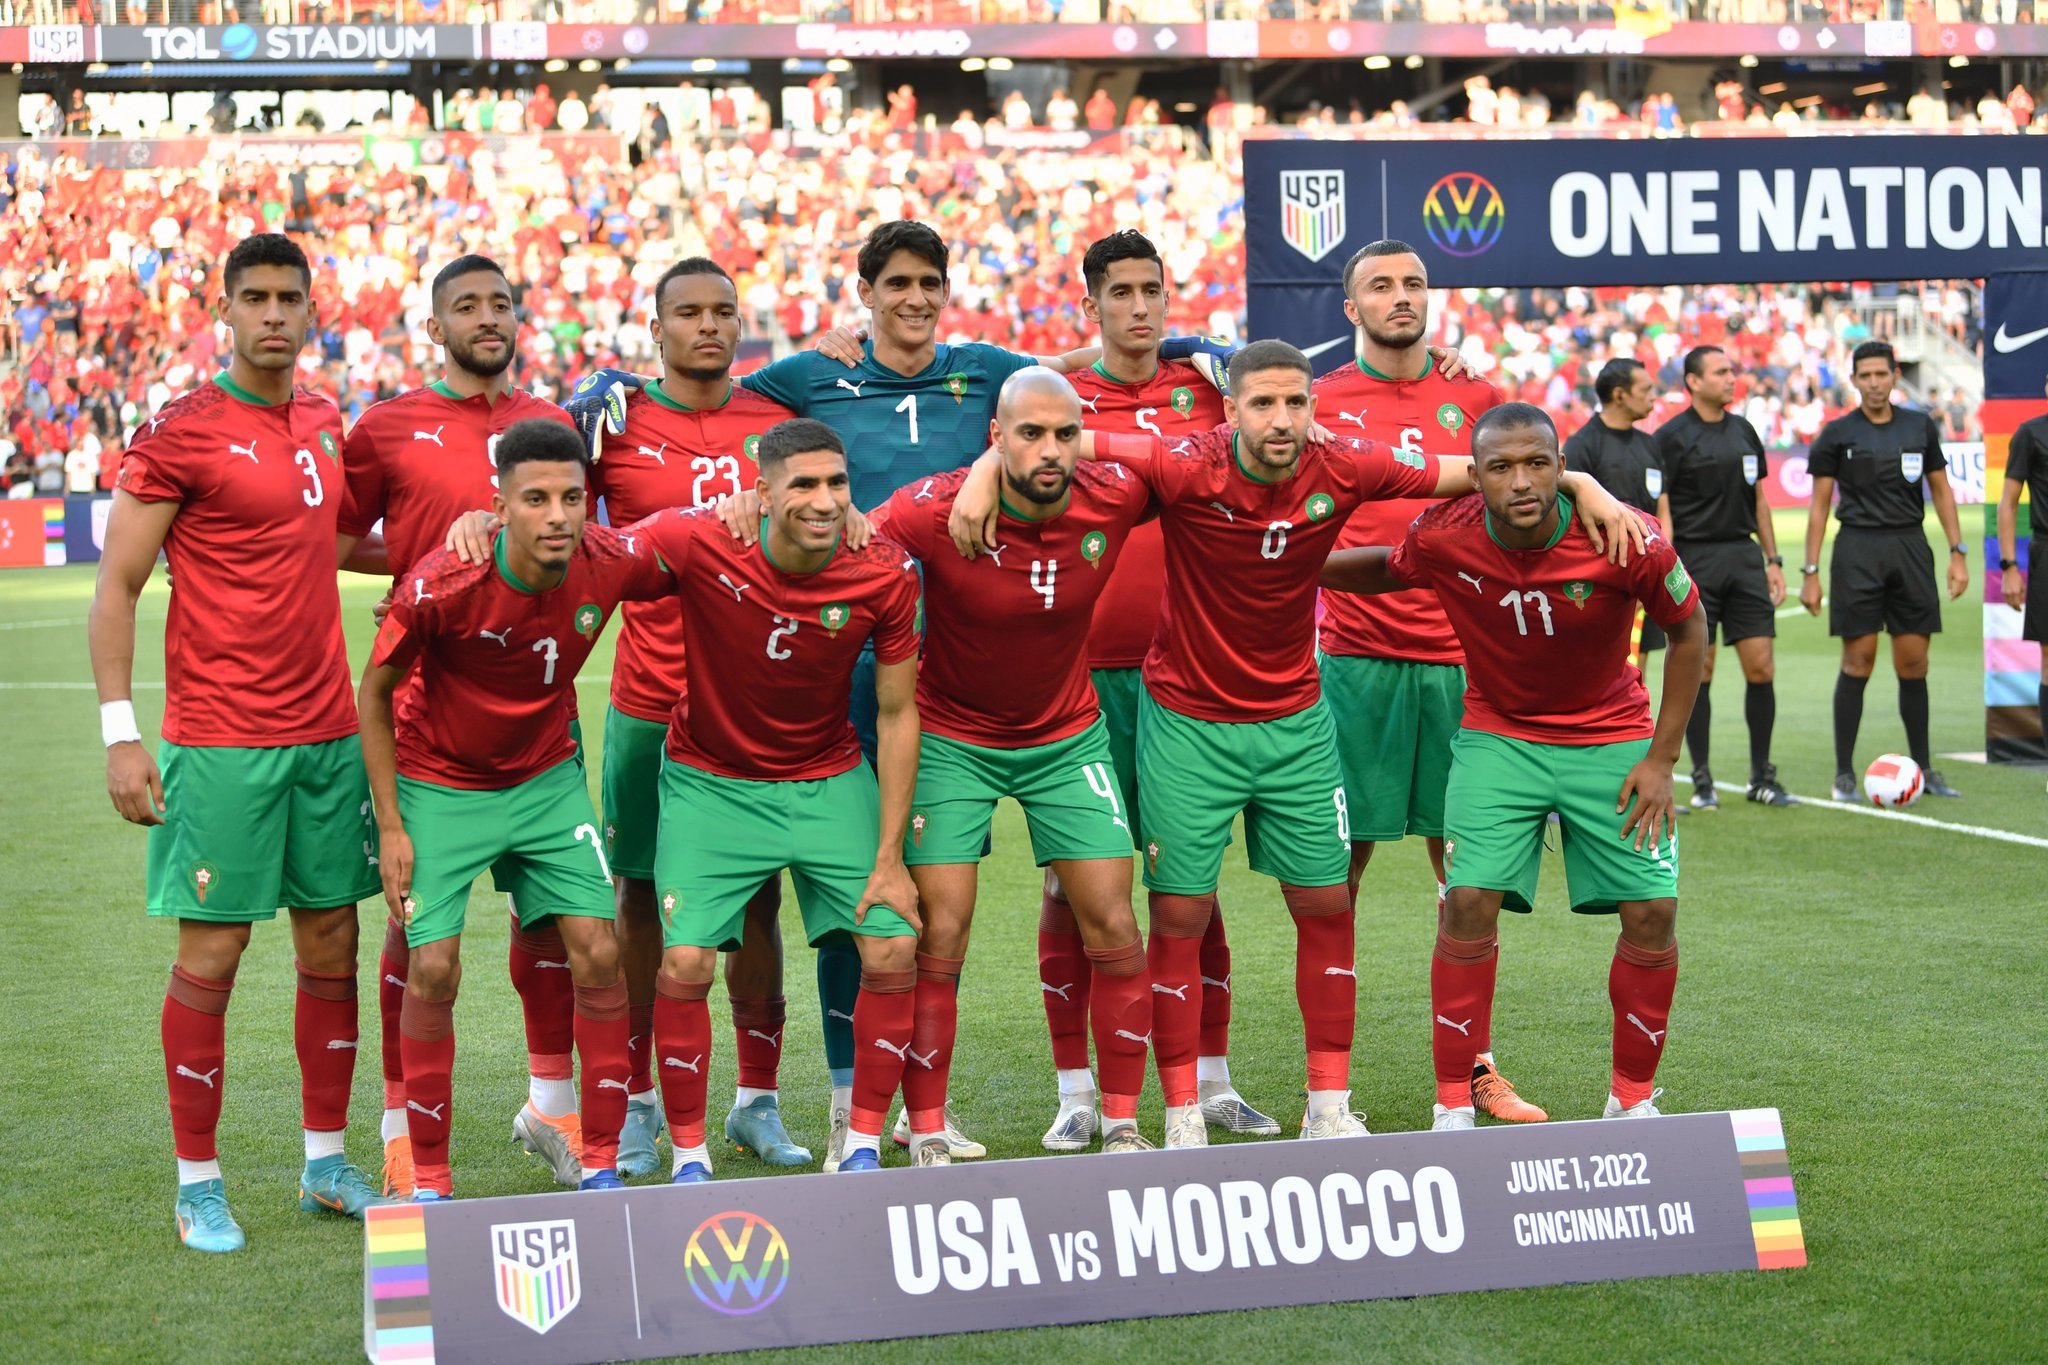 المنتخب الوطني المغربي ينهزم أمام نظيره الأمريكي بثلاثية